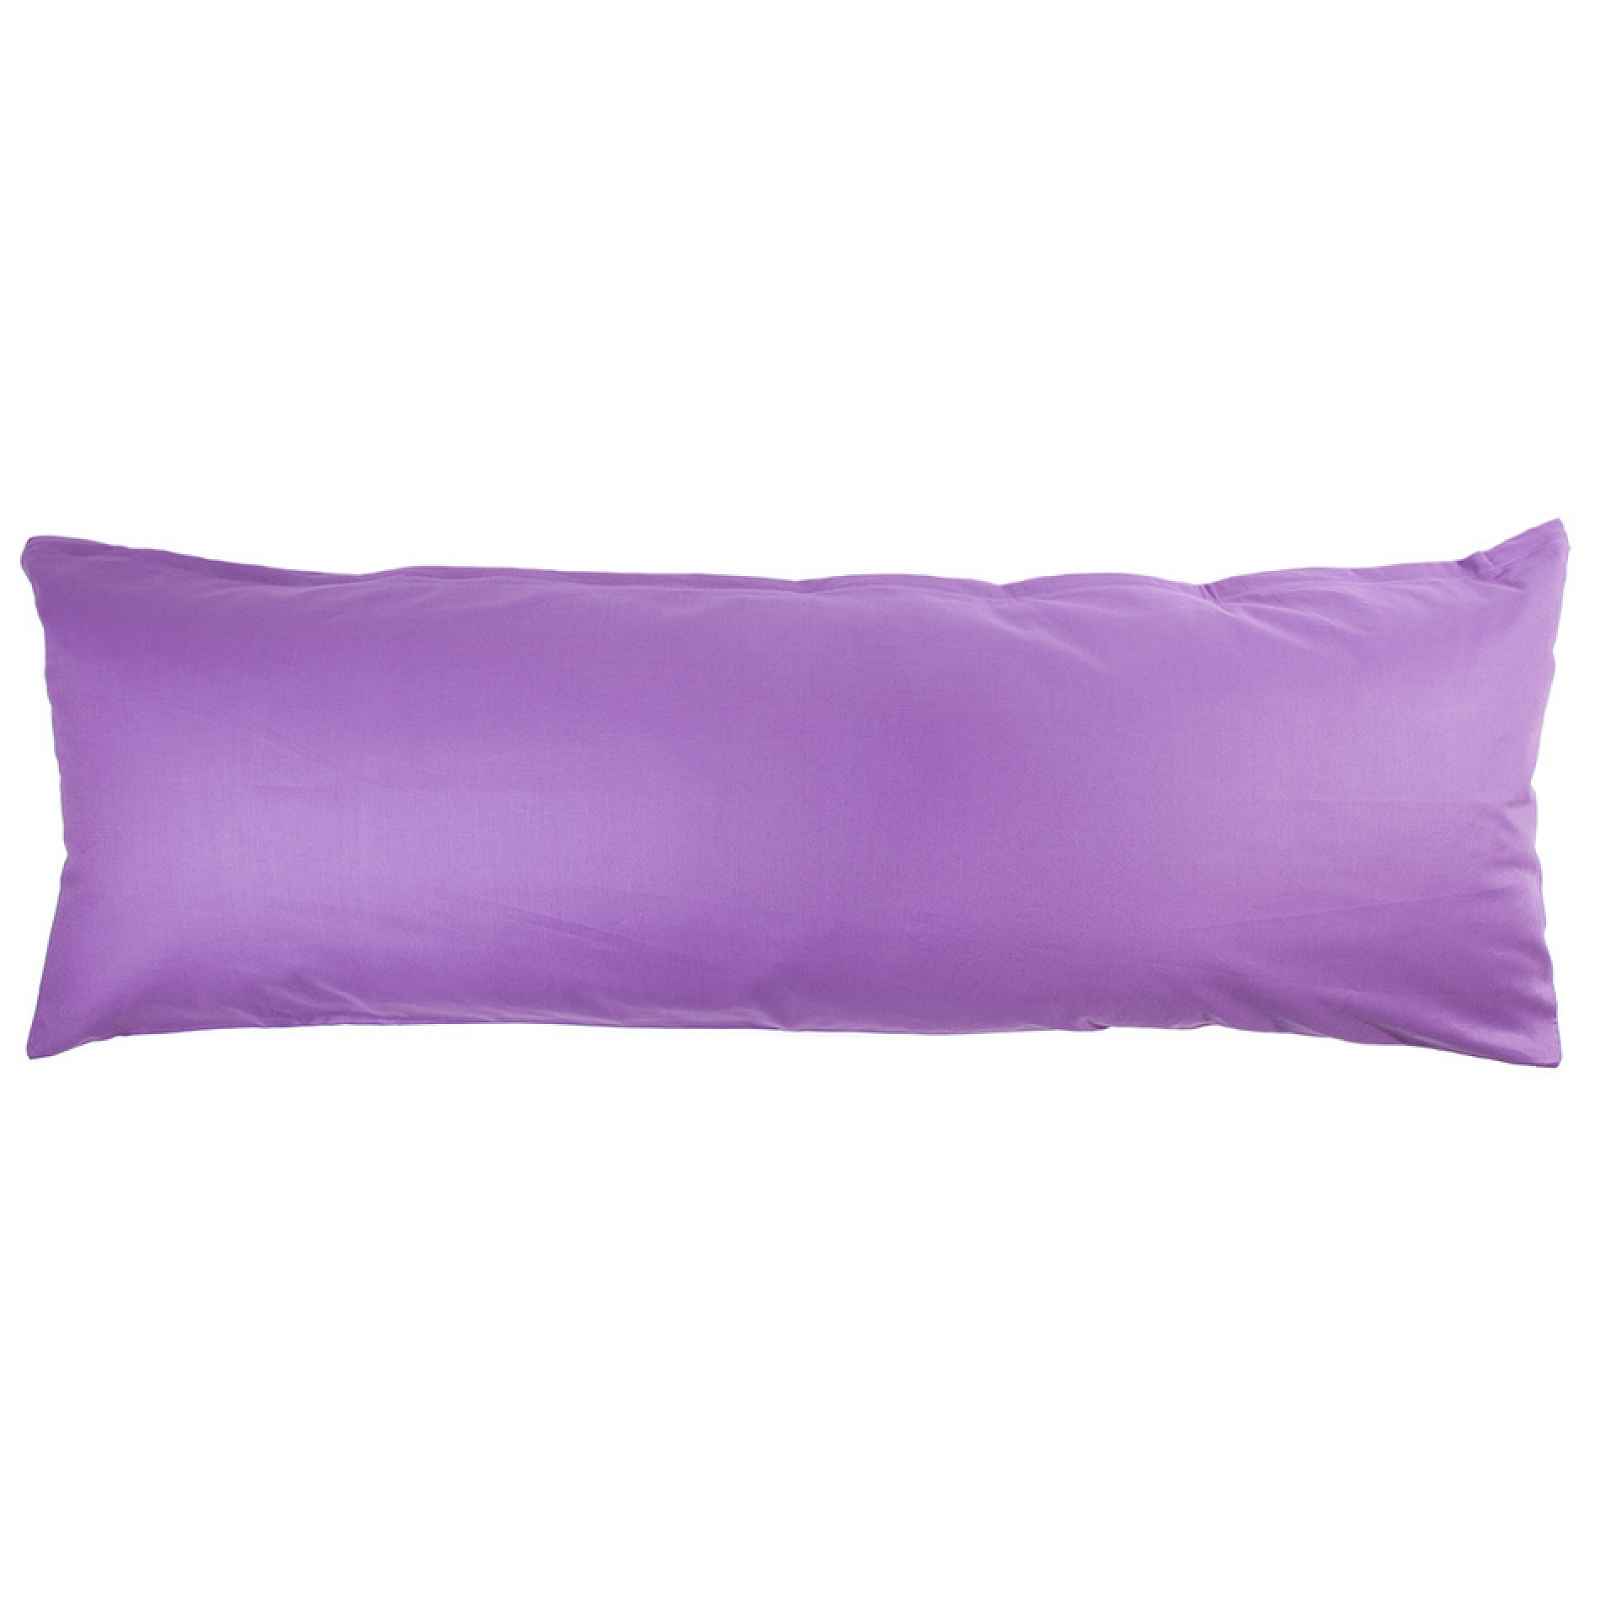 4Home Povlak na Relaxační polštář Náhradní manžel tmavě fialová, 45 x 120 cm